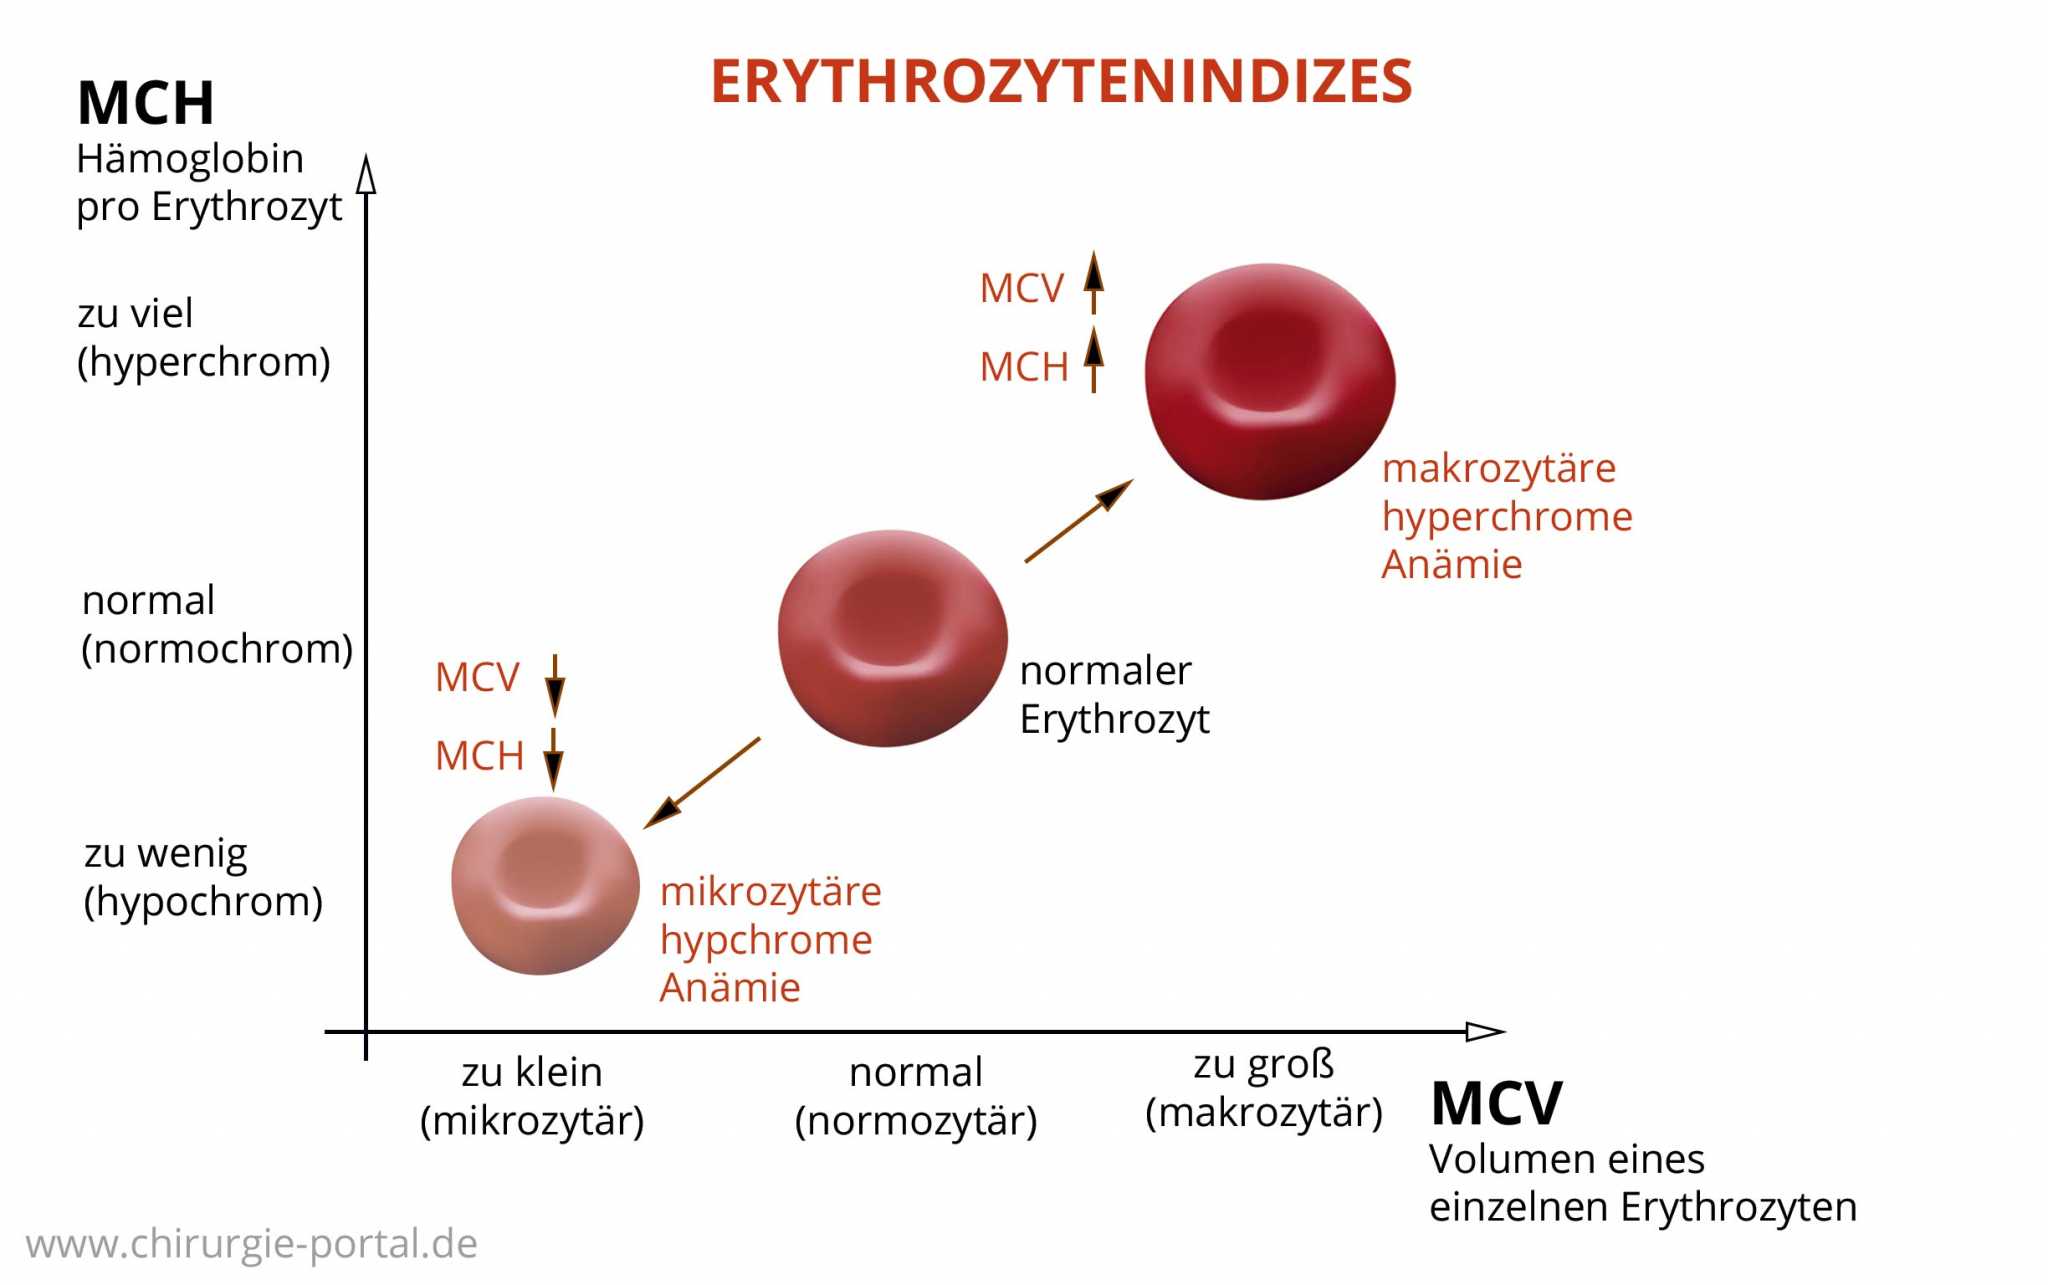 Мсн среднее содержание гемоглобина в эритроците. MCV эритроциты. Содержание гемоглобина в эритроците. MCH В анализе крови. Ср содержание гемоглобина в эритроците.